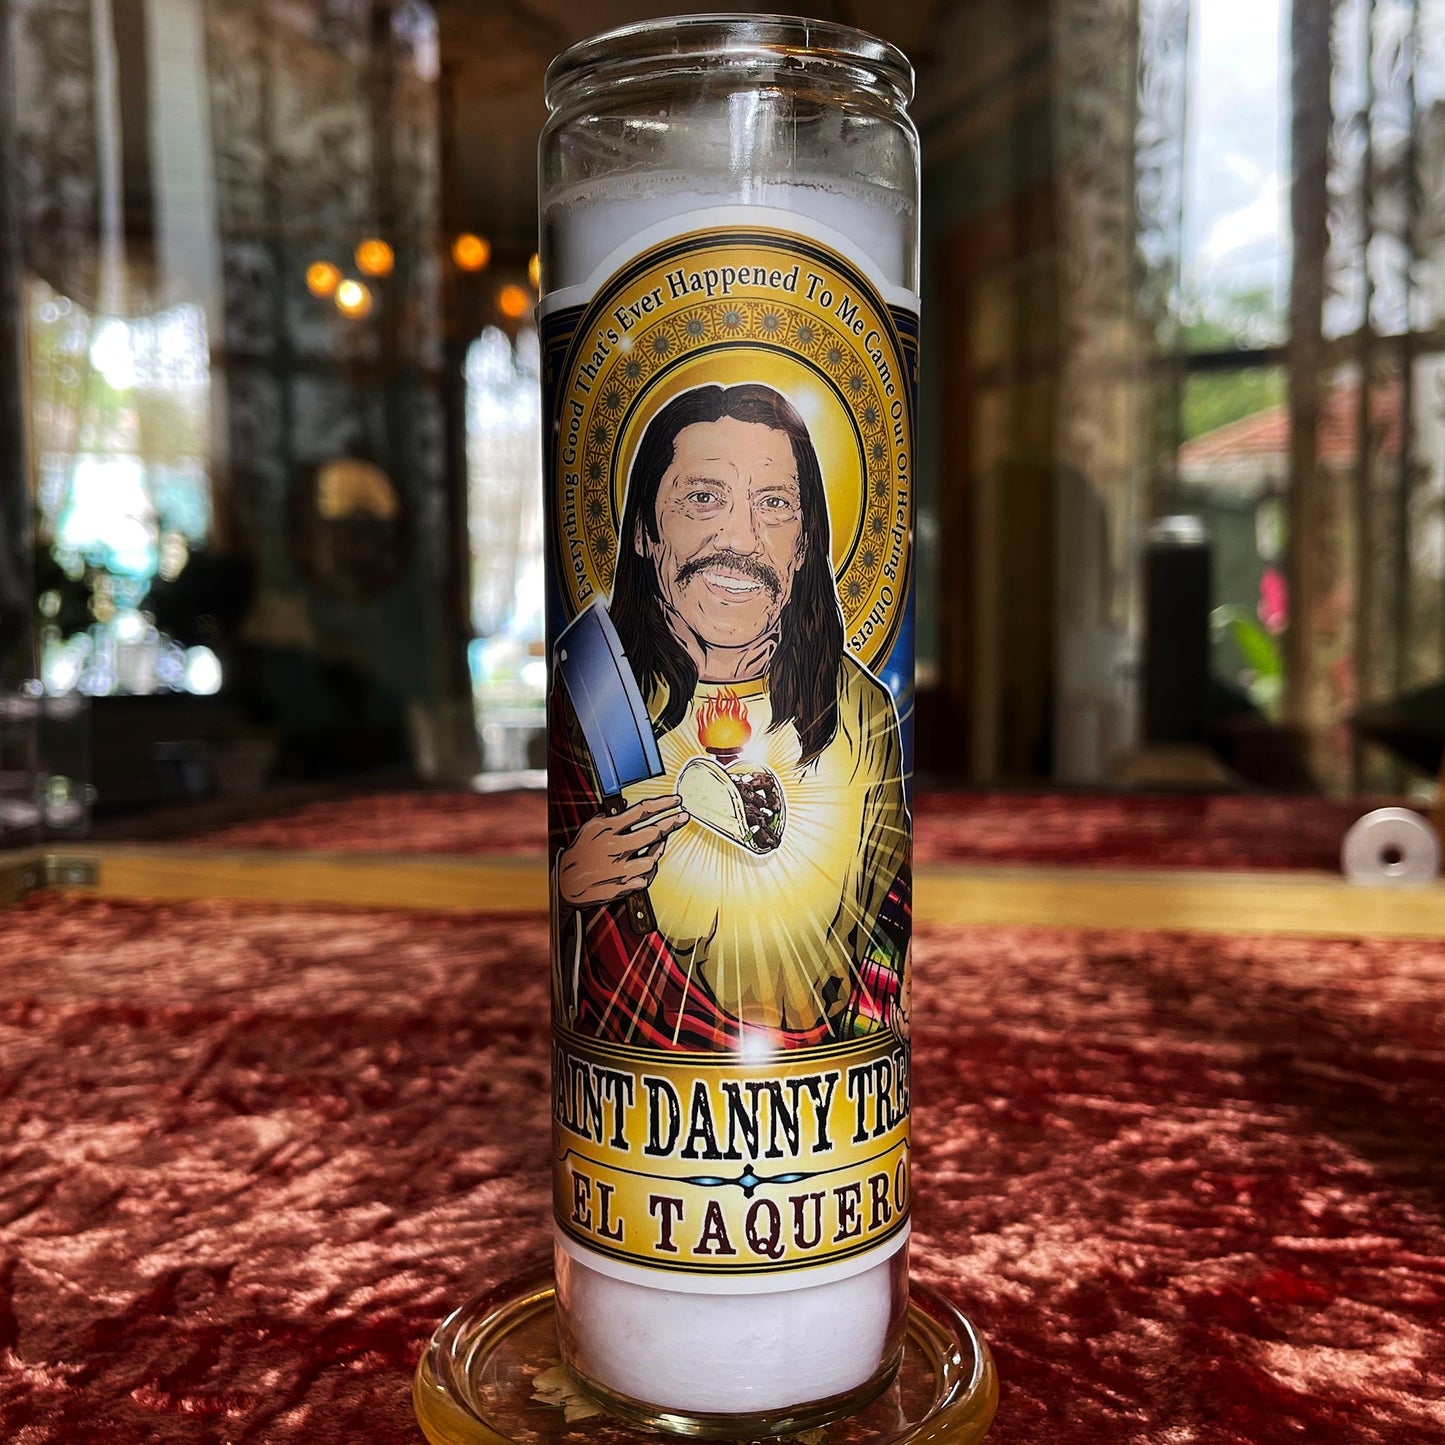 Saint Danny Trejo El Taquero Candle Cleaverandblade.com